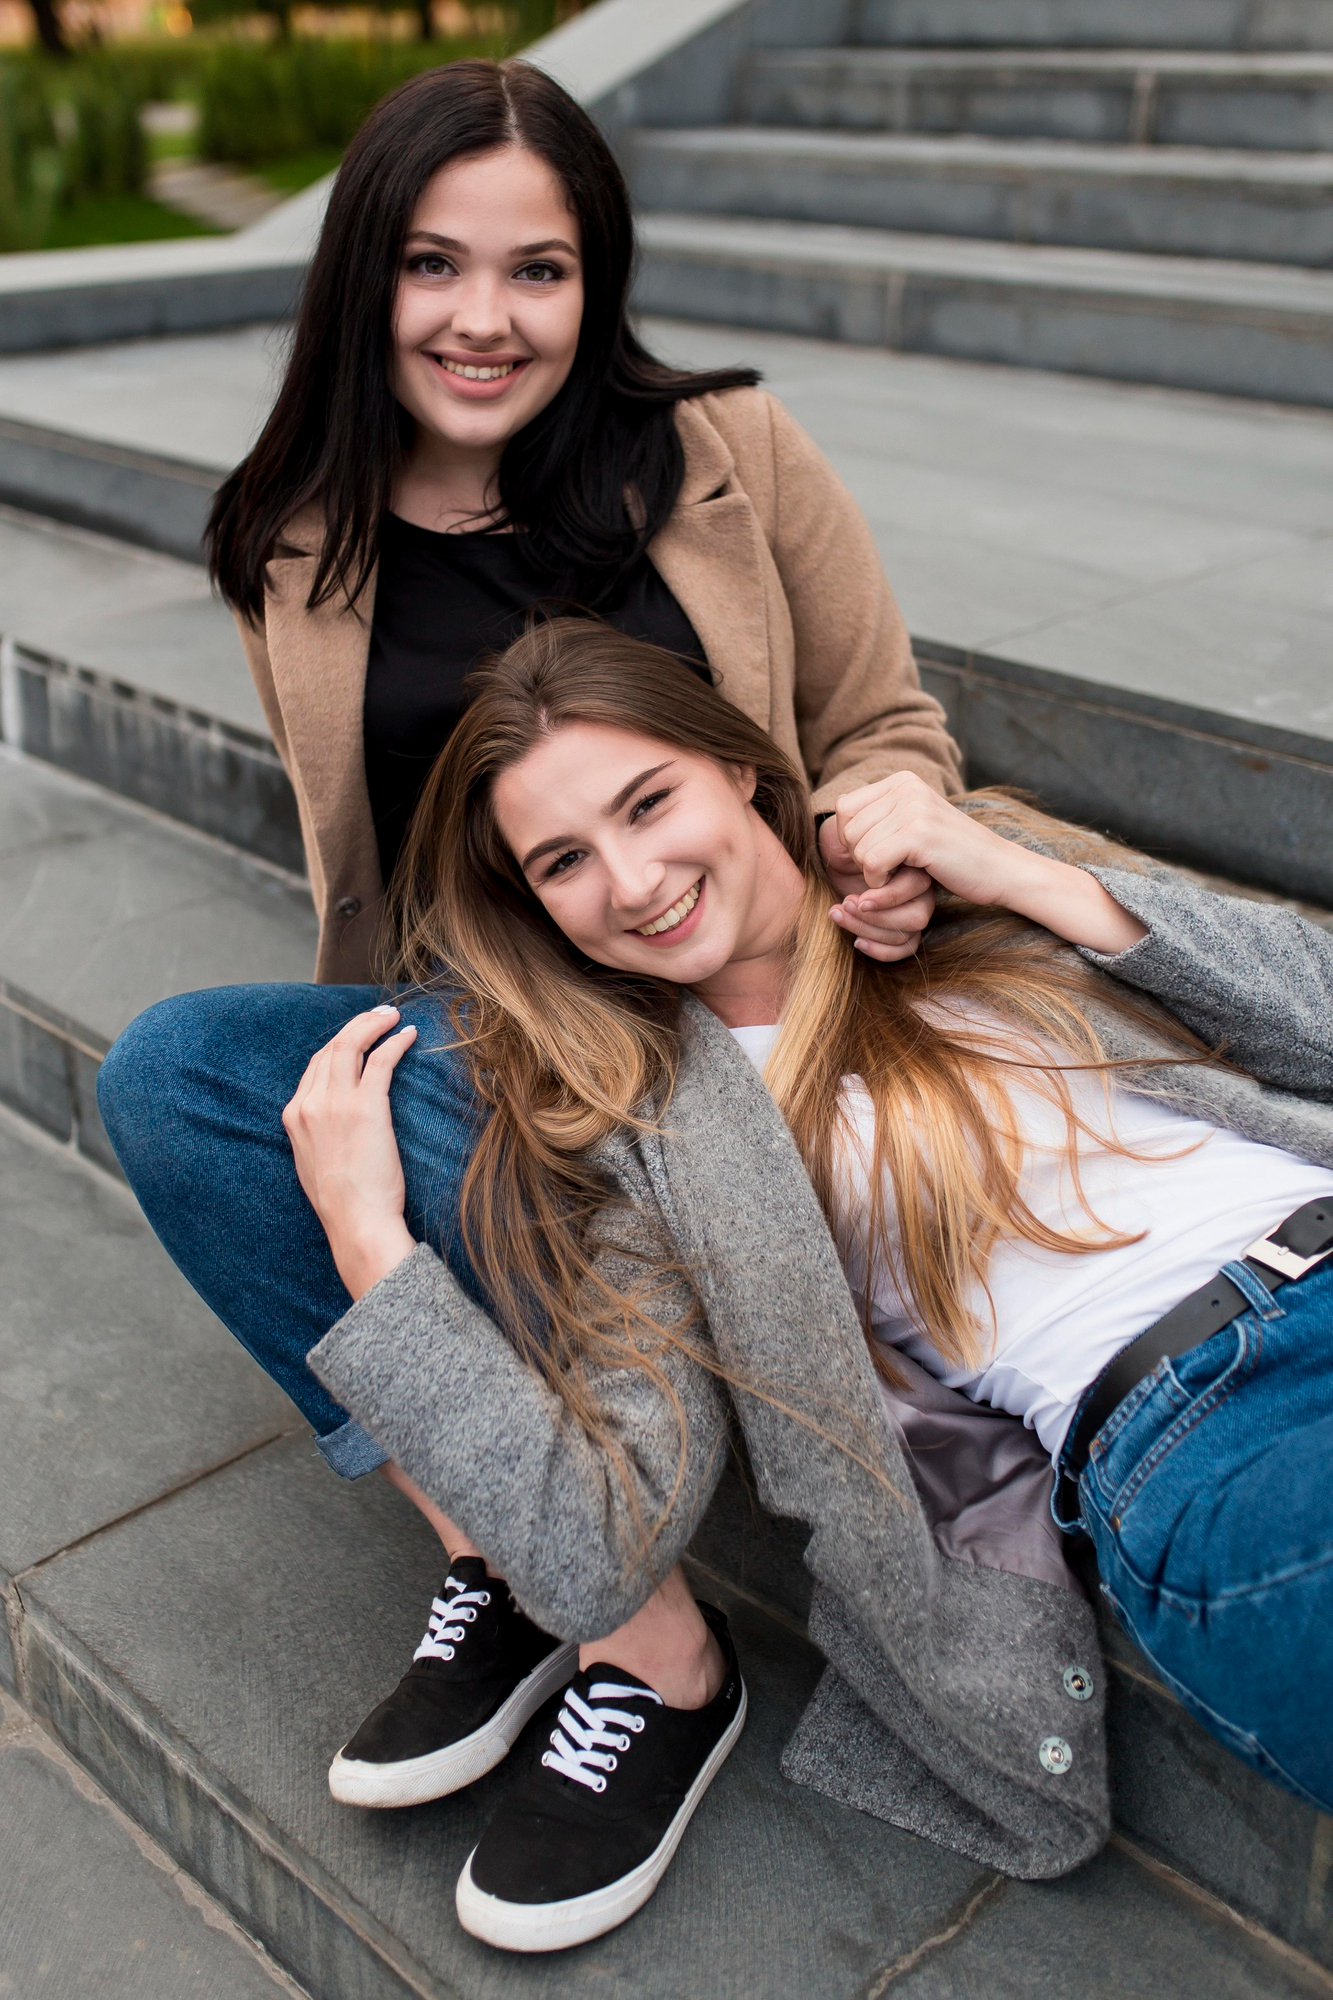 Zwei glückliche junge Frauen, die sich draußen auf einer Treppe treffen | Quelle: Freepik